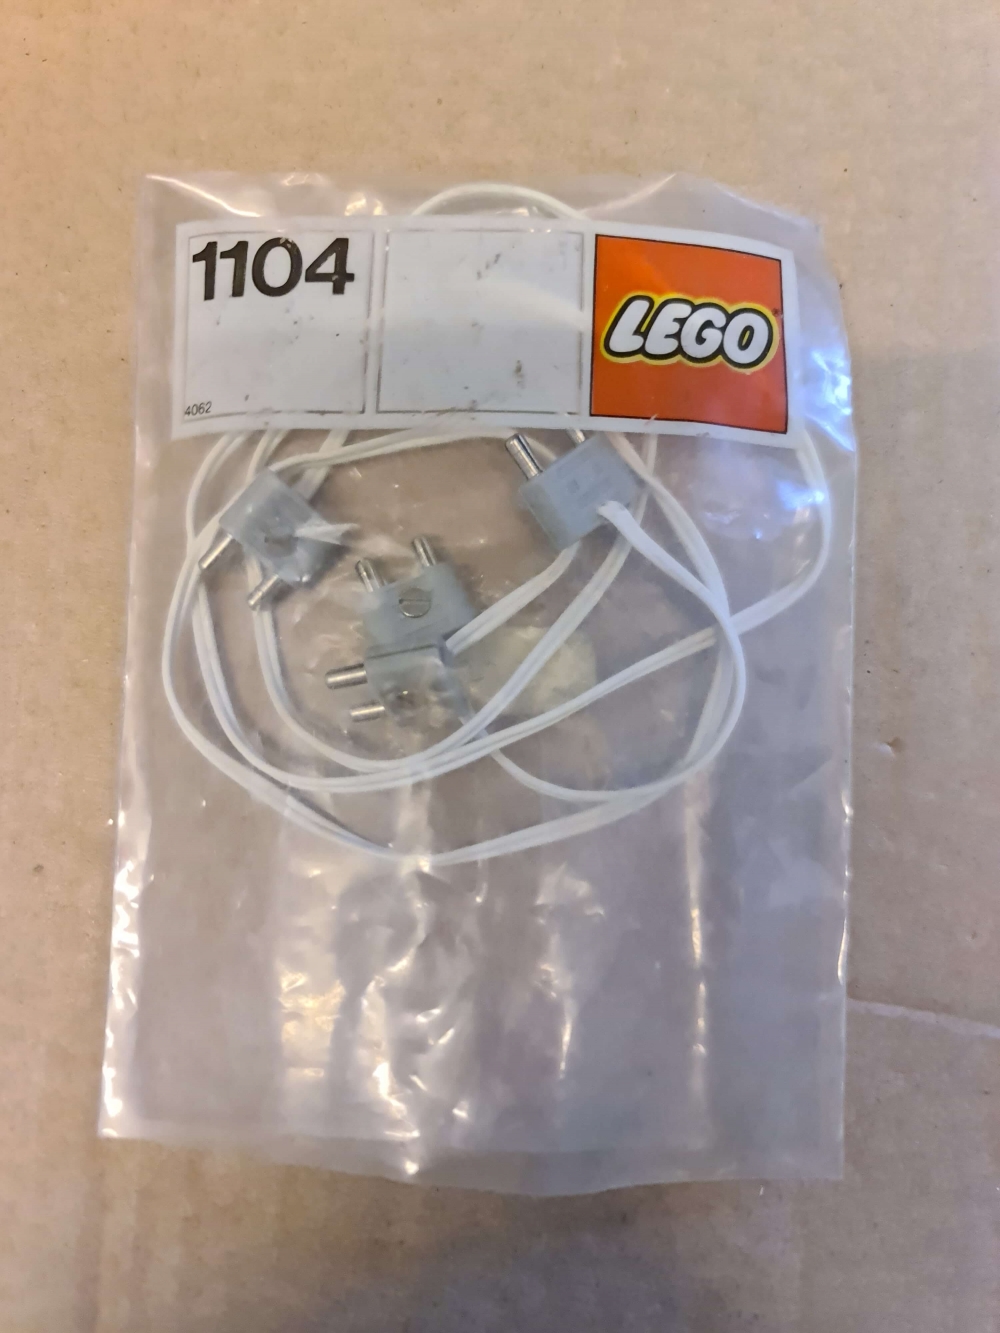 Sett 1104 fra Lego Service Packs serien.
Ubrukt men posen er åpen.